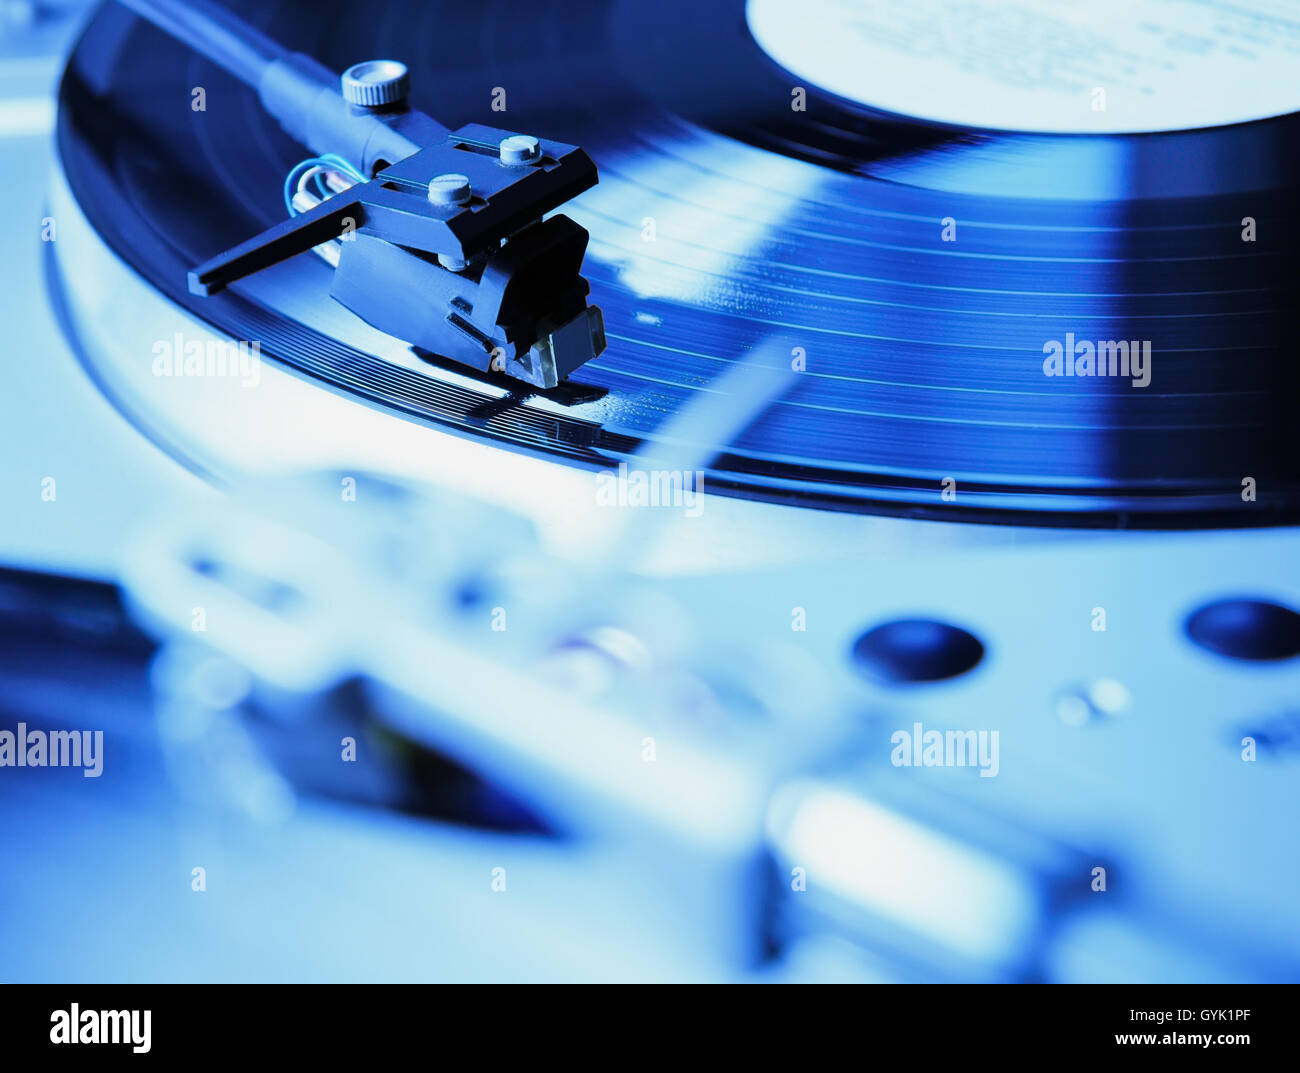 Plattenspieler Vinyl-Schallplatte mit Musik zu spielen. Nützliche Ausrüstung für DJ, Diskothek und Retro-Hipster-Thema oder Audio-Enthusiasten. Leuchtende blaue Farbe Stockfoto